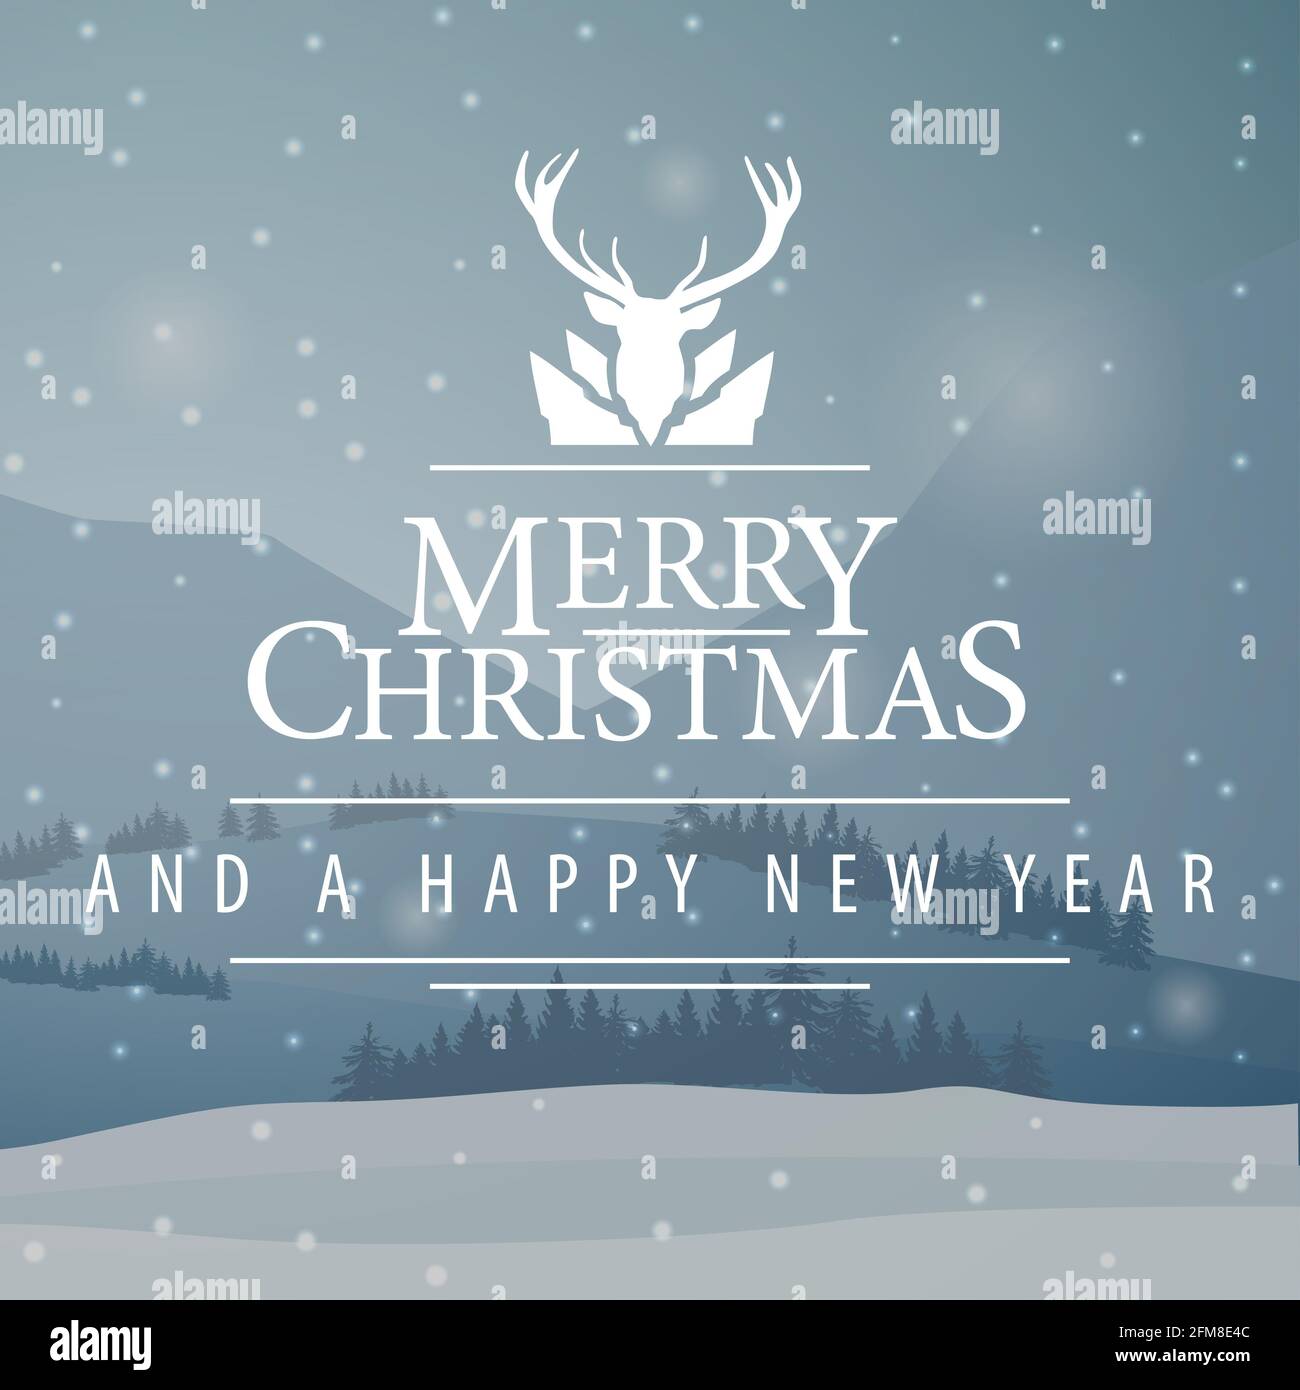 Joyeux Noël et bonne année, carte postale carrée grise avec paysage d'hiver et logotype de salutation avec cerf Banque D'Images